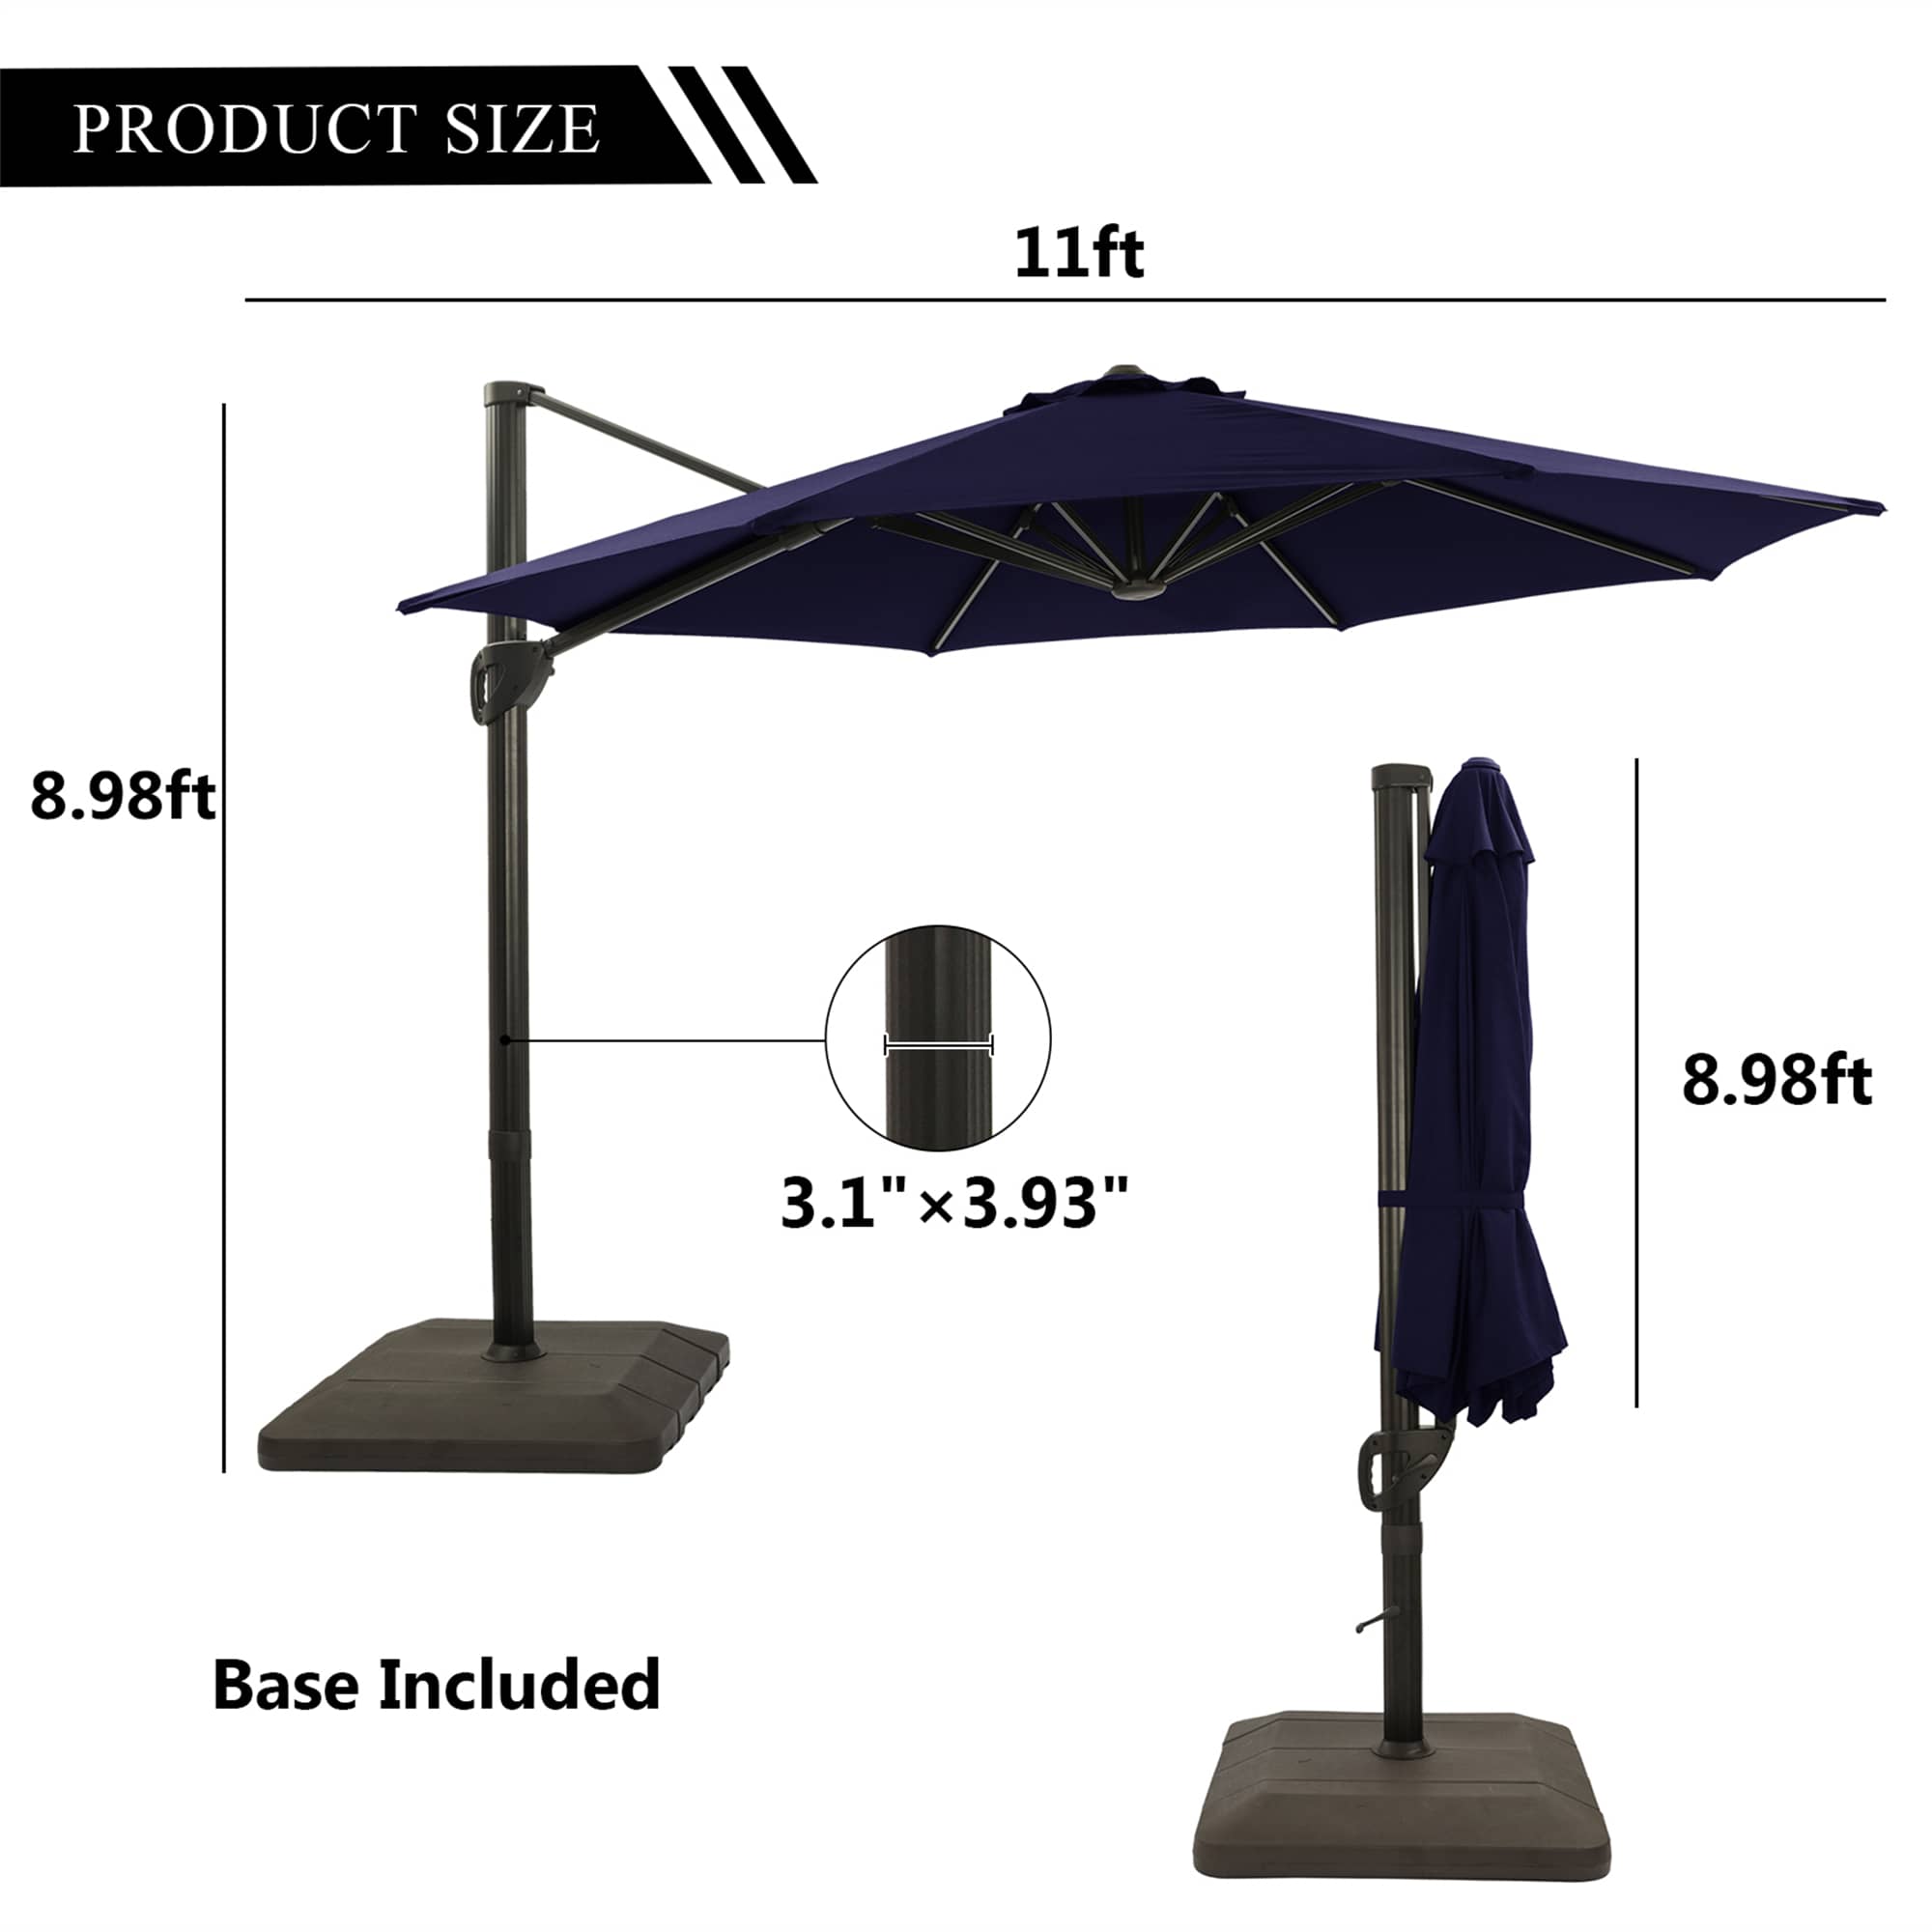 11 ft. Round Patio Umbrella Dimensions